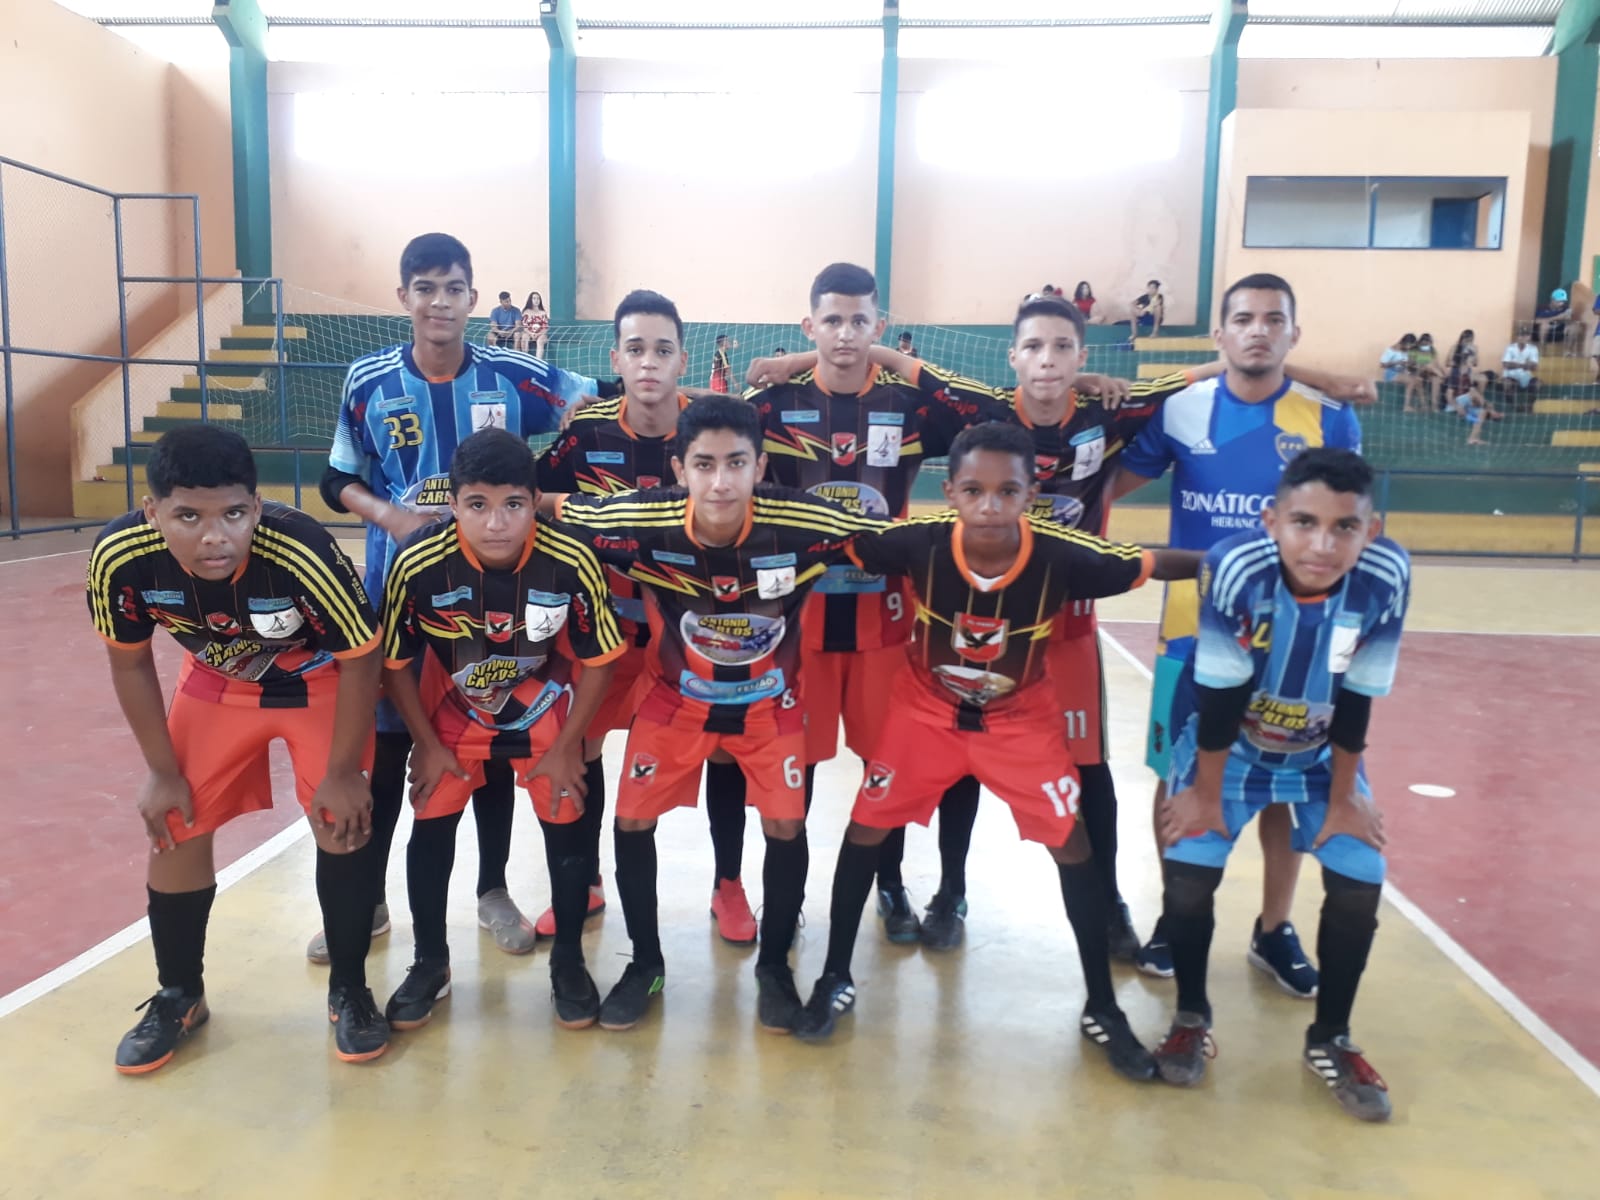 Esperantina sediou jogos do circuito Piauí e Maranhão de futsal - Imagem 4